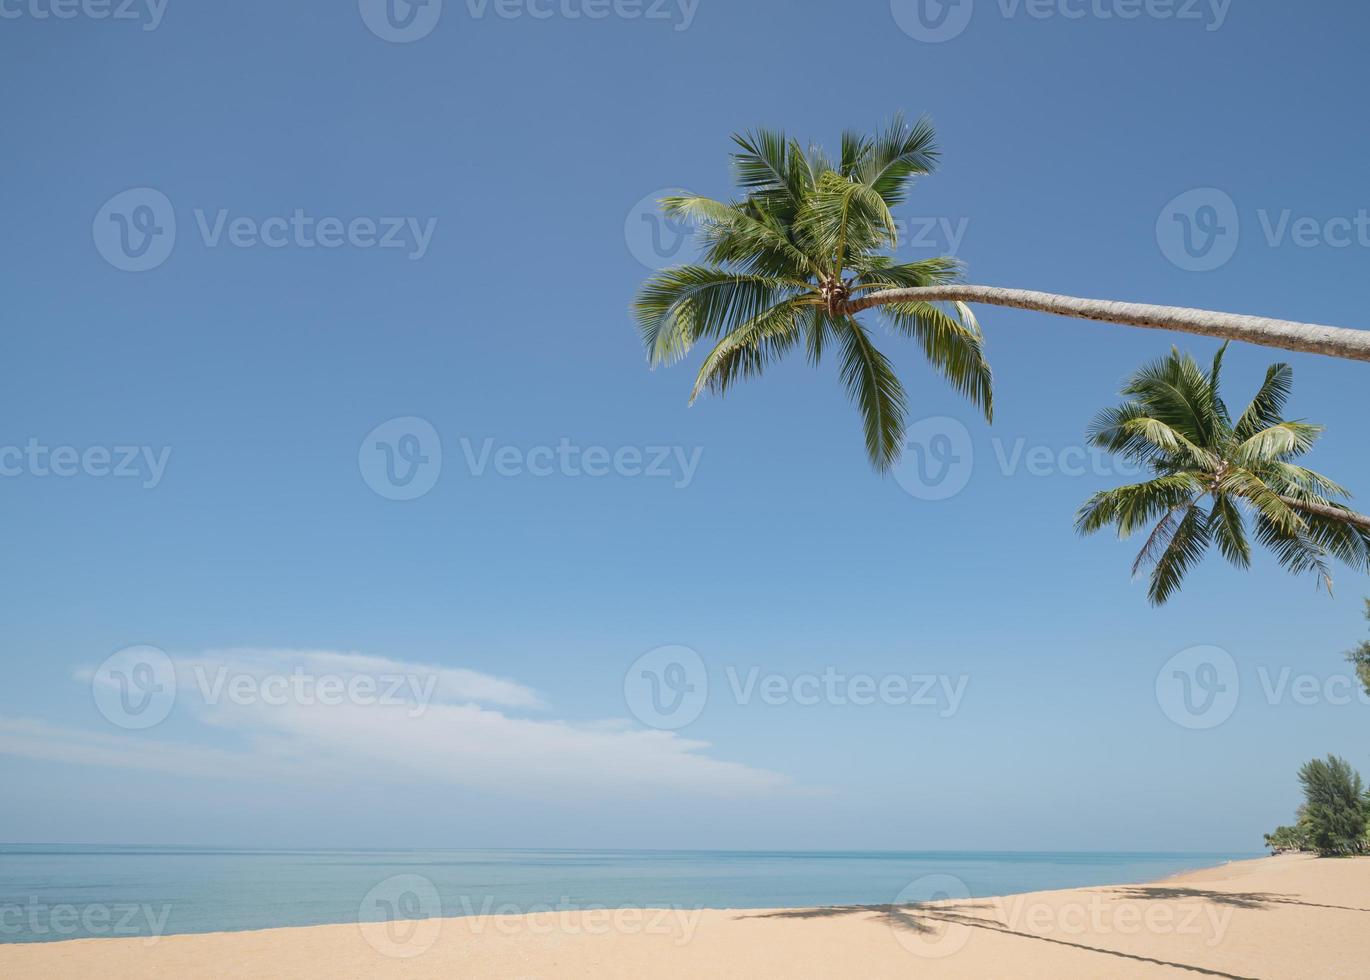 cocotier sur la plage de sable avec un ciel bleu. photo